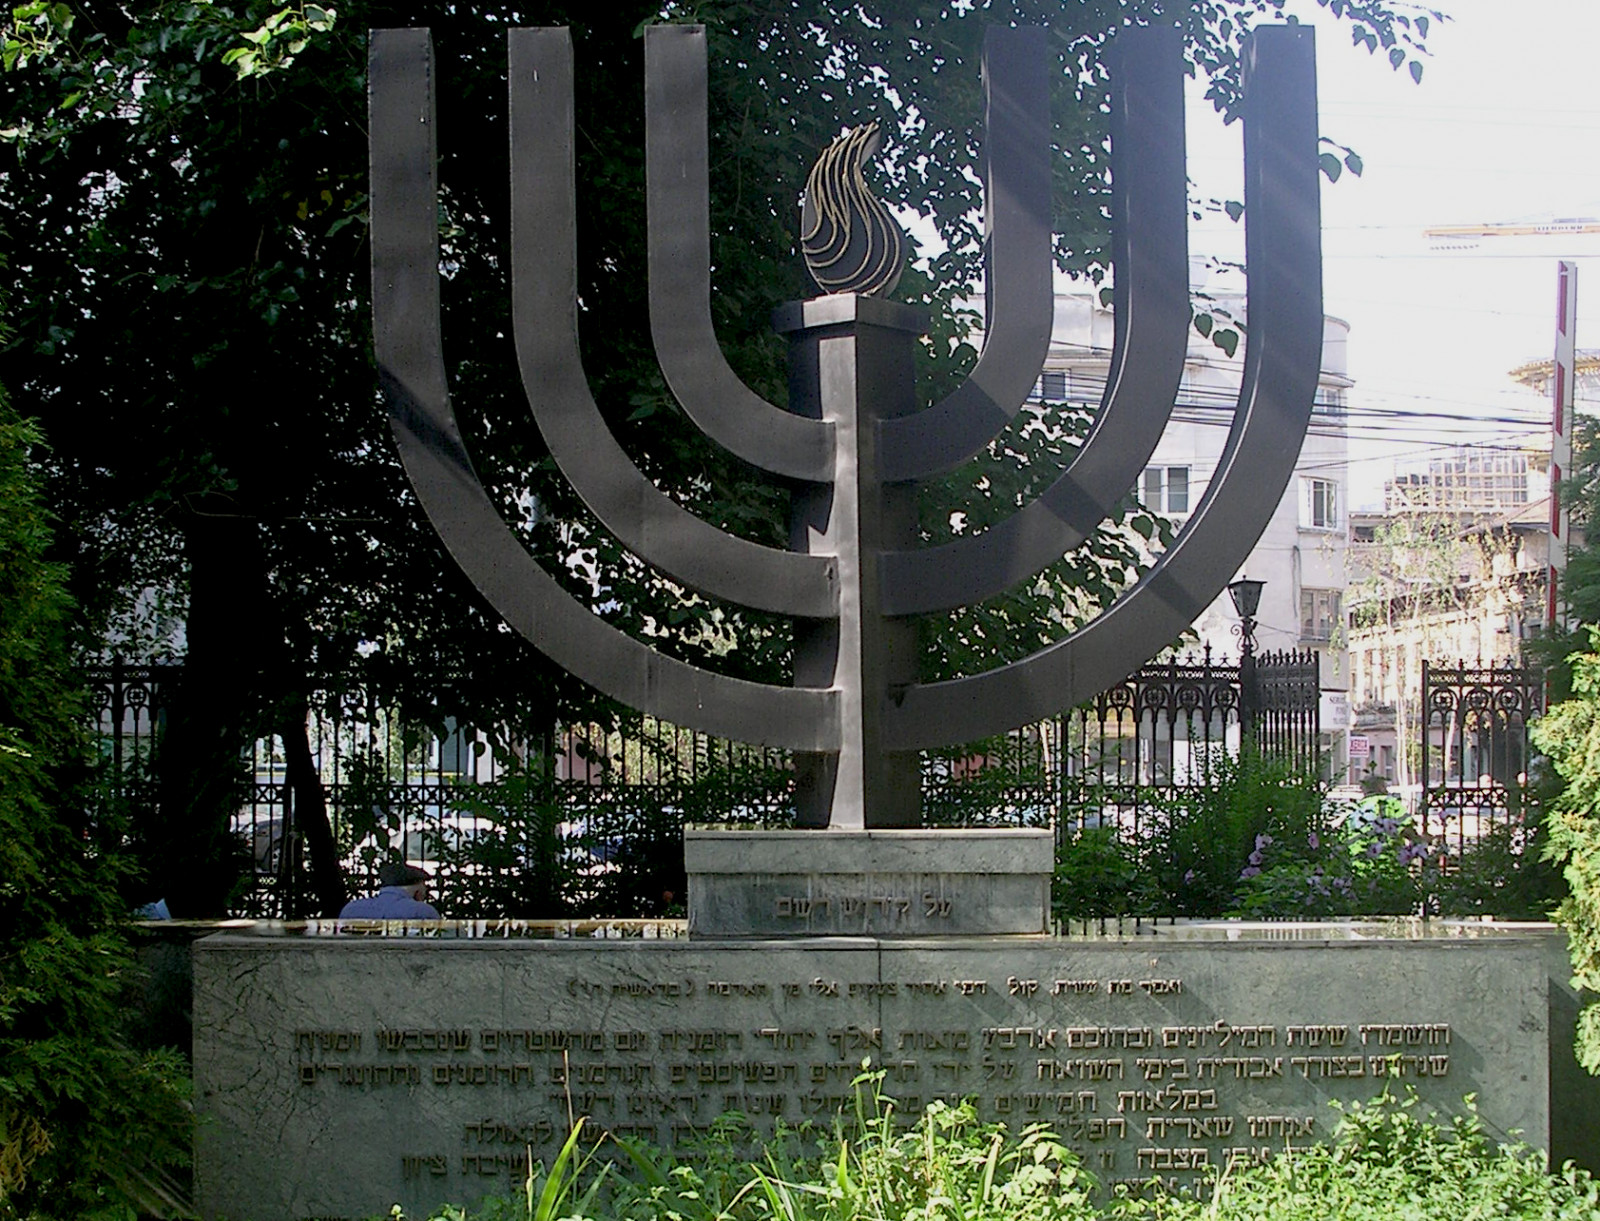 אנדרטה בבוקרשט לזכרם של יהודי רומניה שנרצחו בשואה, עם הכיתוב "קול דמי אחיך צועקים אלי מן האדמה". צילום: אמיר בראון